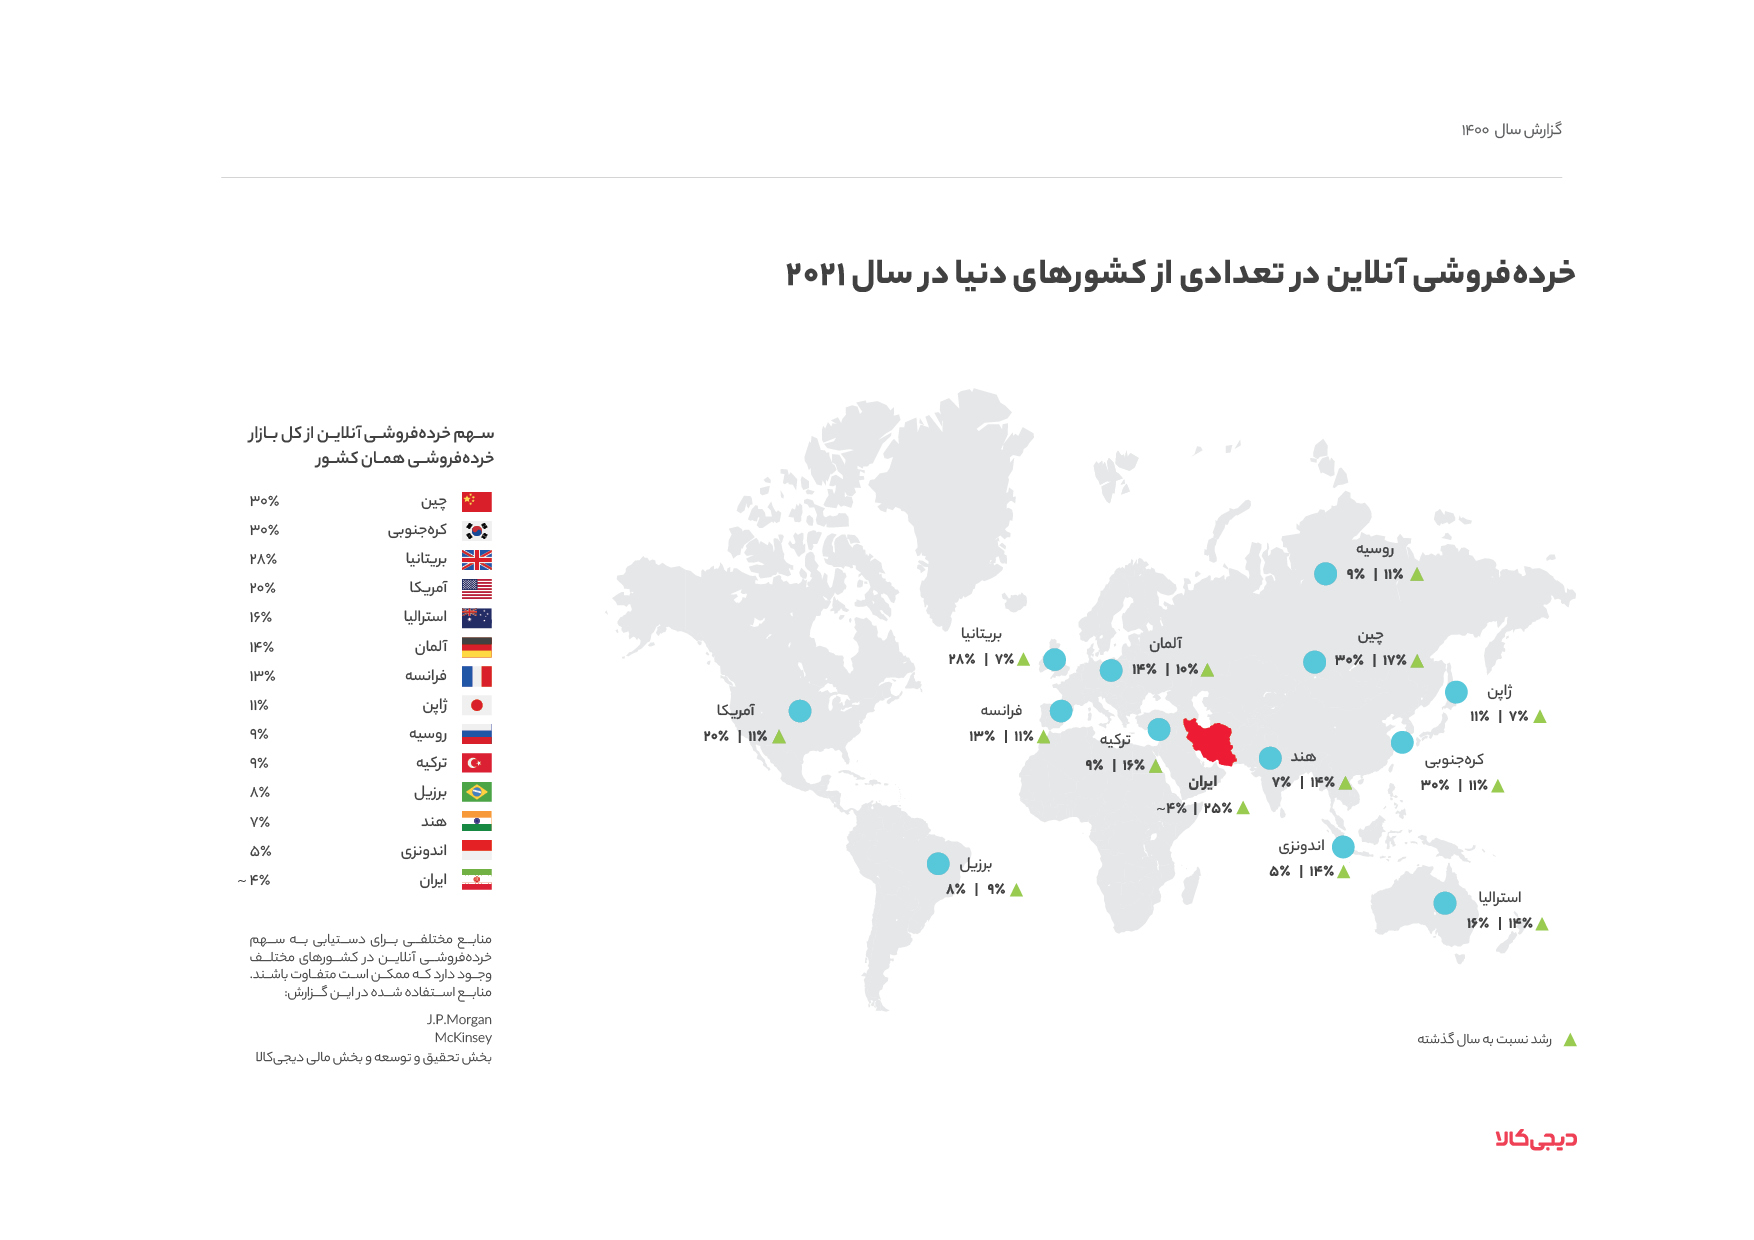 یک برش کوچک؛ خرده فروشی آنلاین، فقط ۴ درصد از خرده فروشی ایران